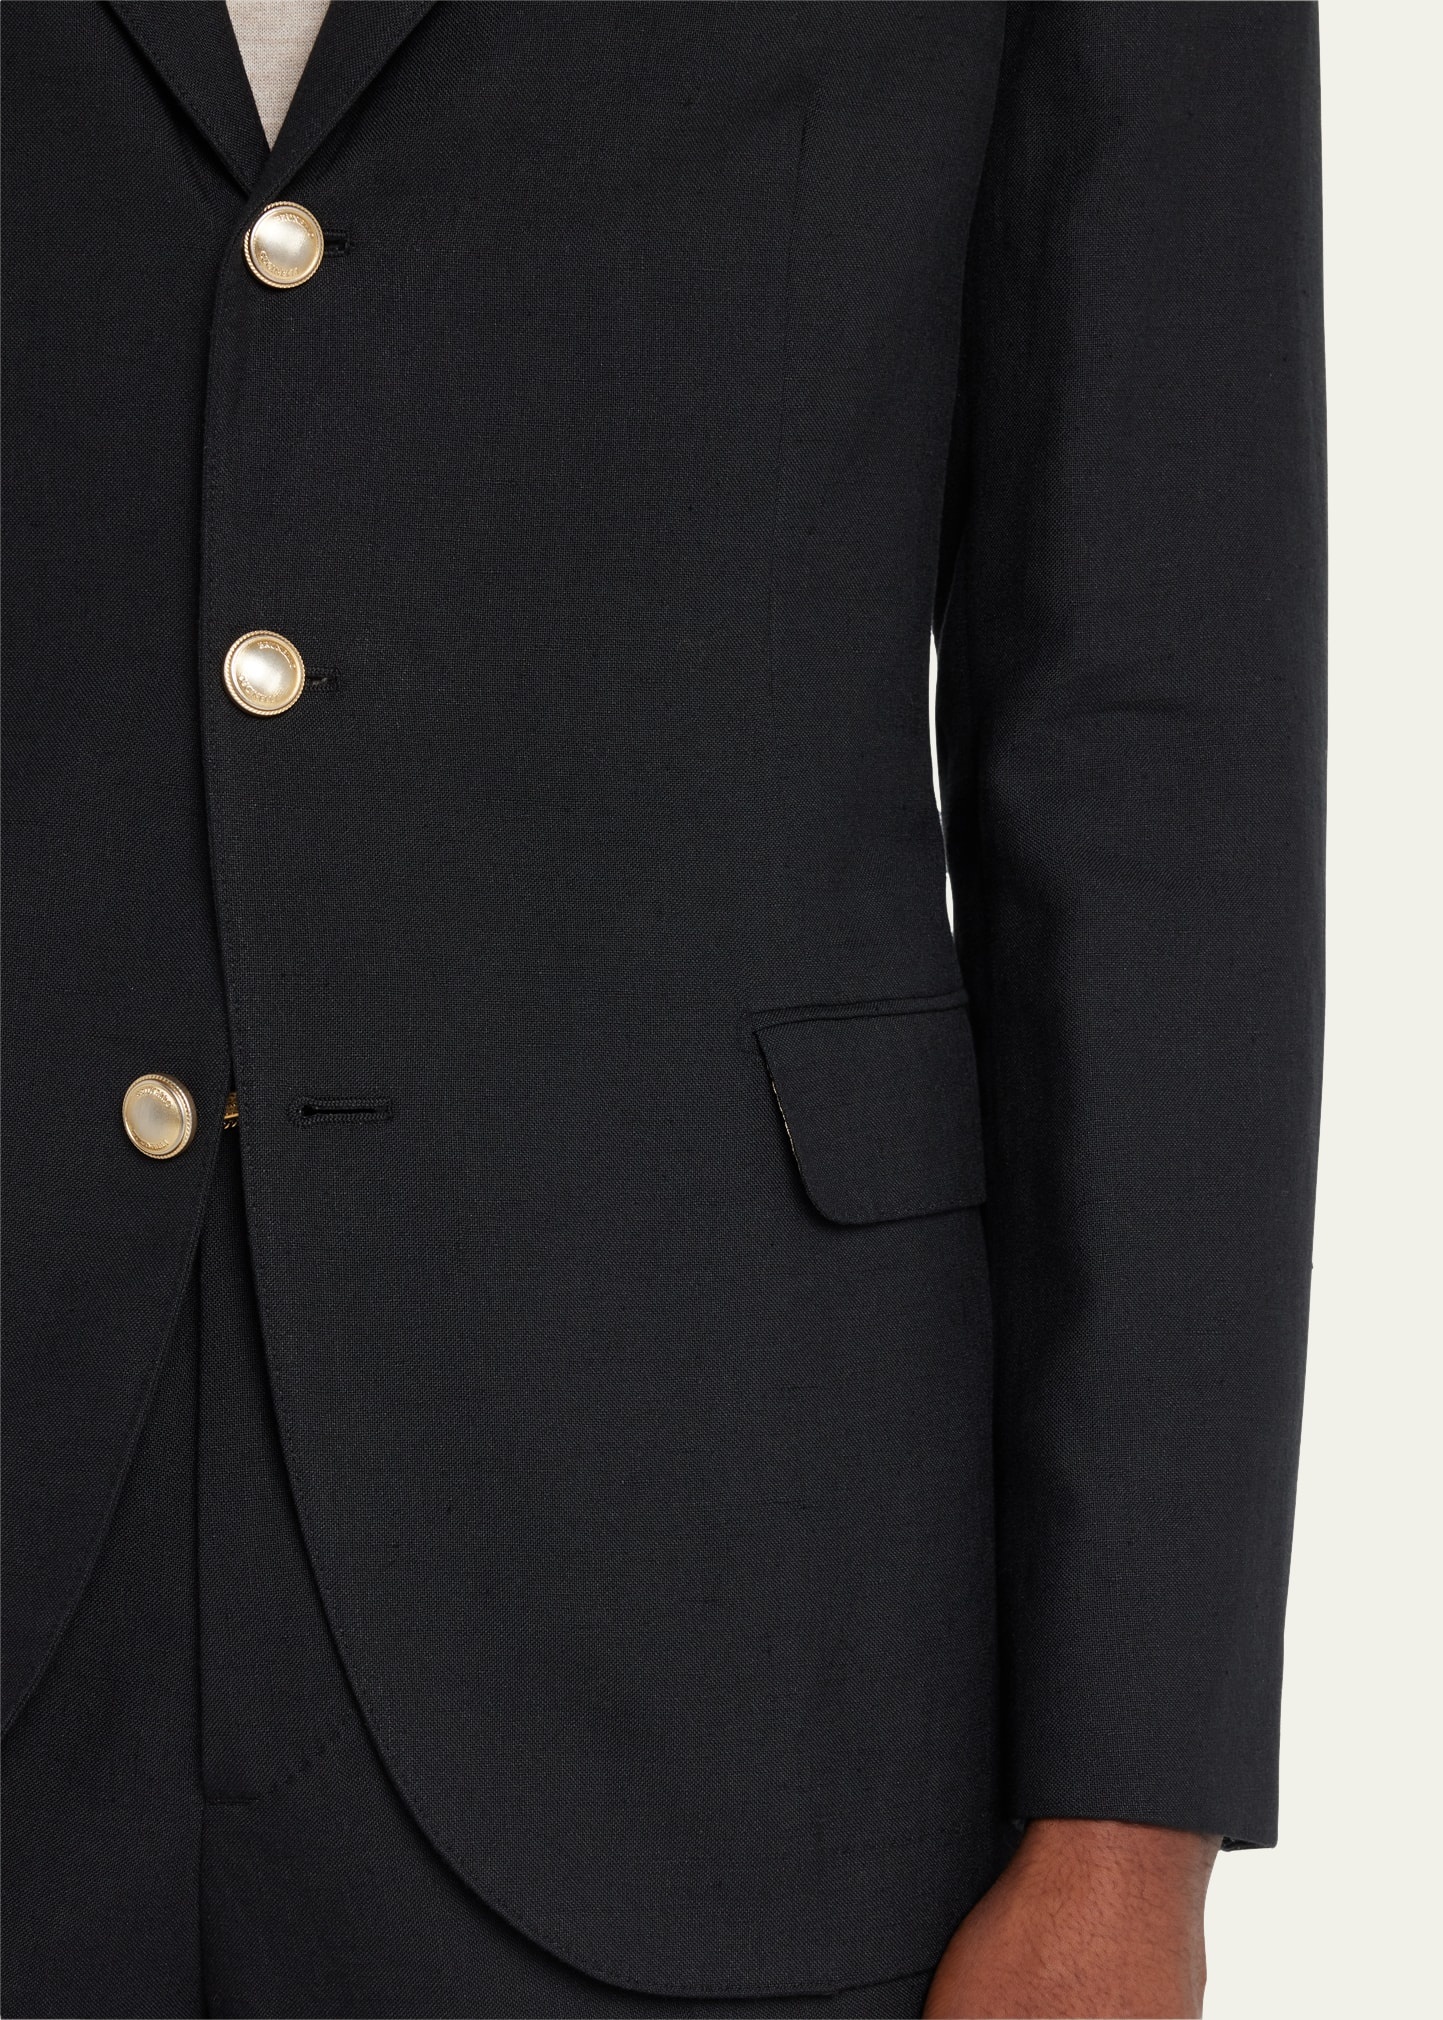 Men's Linen-Wool Solid Suit - 4